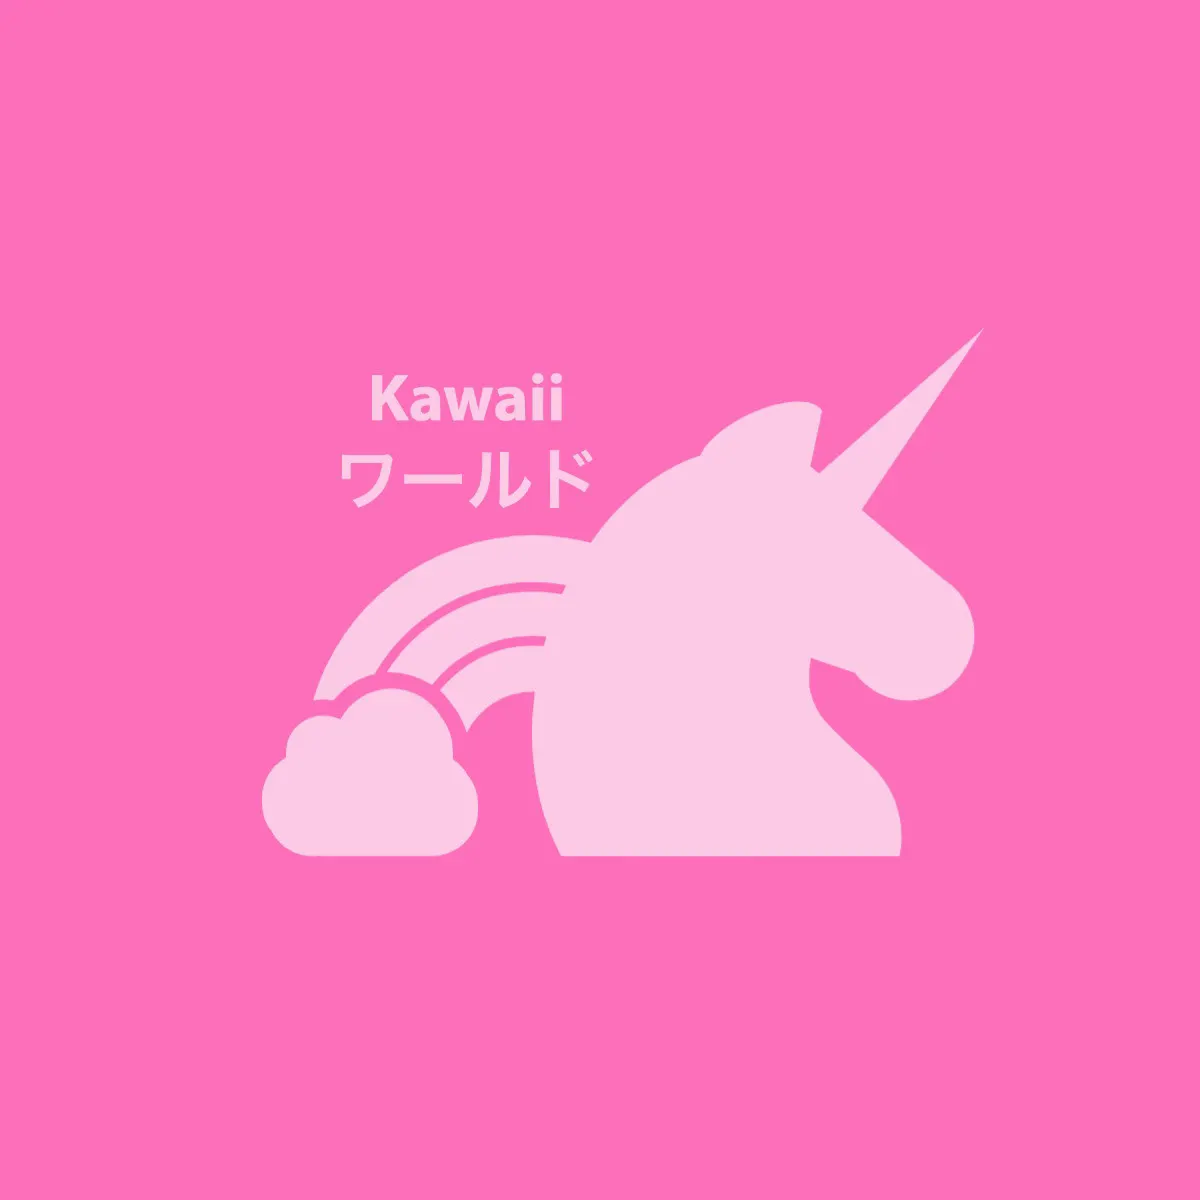 Pink kawaii logo